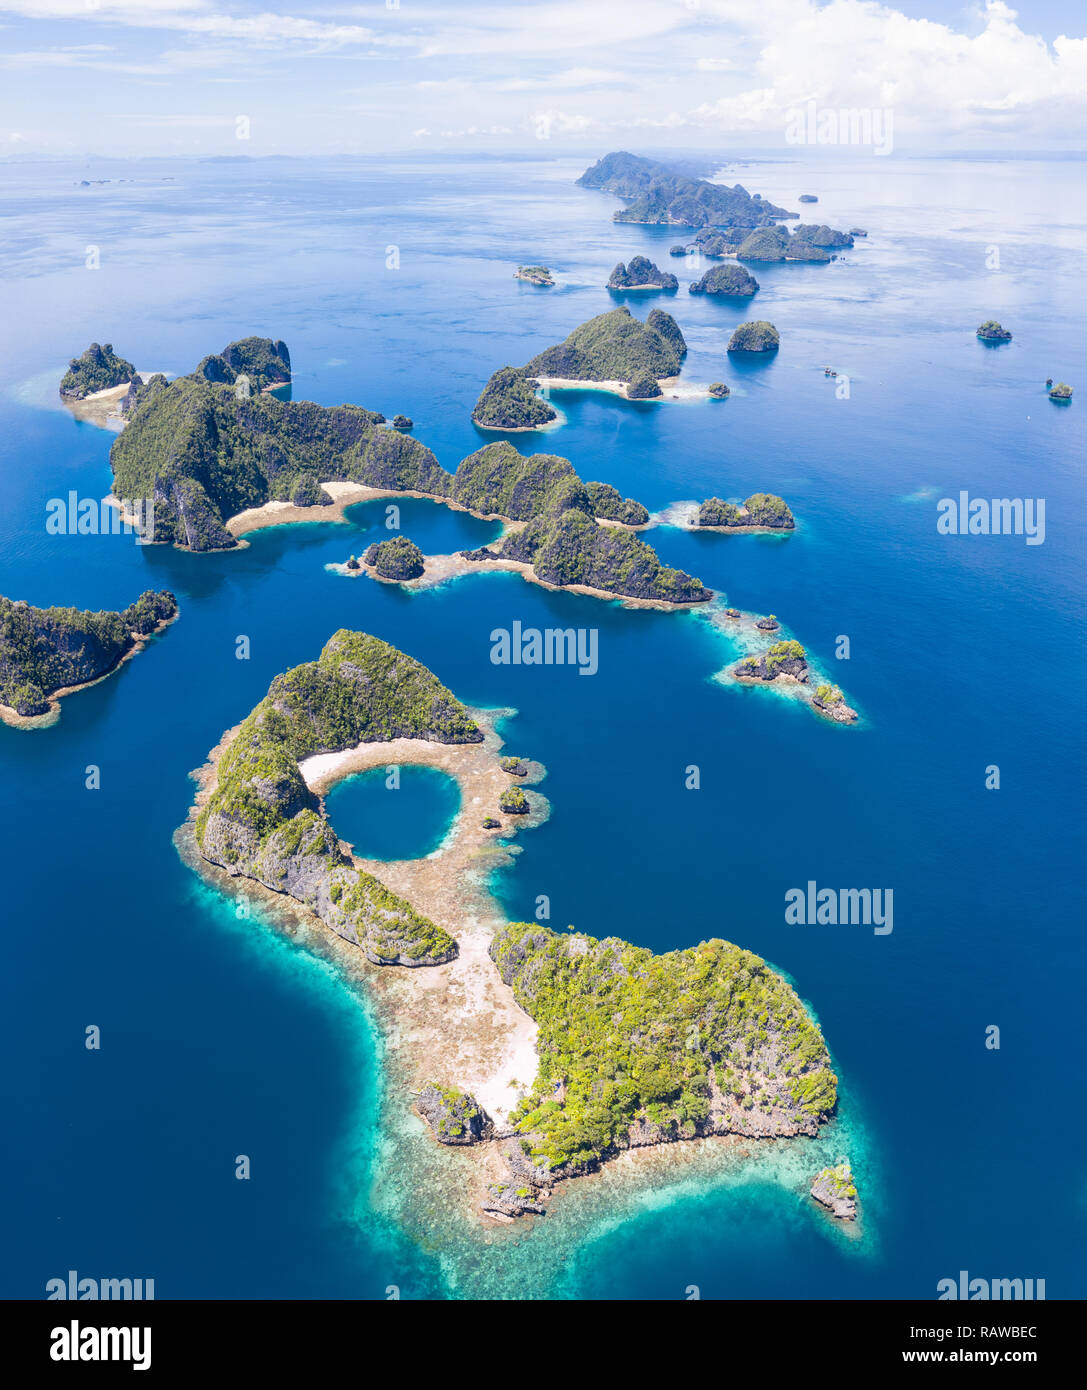 Remote Kalkstein Inseln Aufstieg von der atemberaubenden Küstenlandschaft in Raja Ampat, Indonesien. Dieser vielfältigen Region ist als Herz der Korallen Dreieck bekannt. Stockfoto